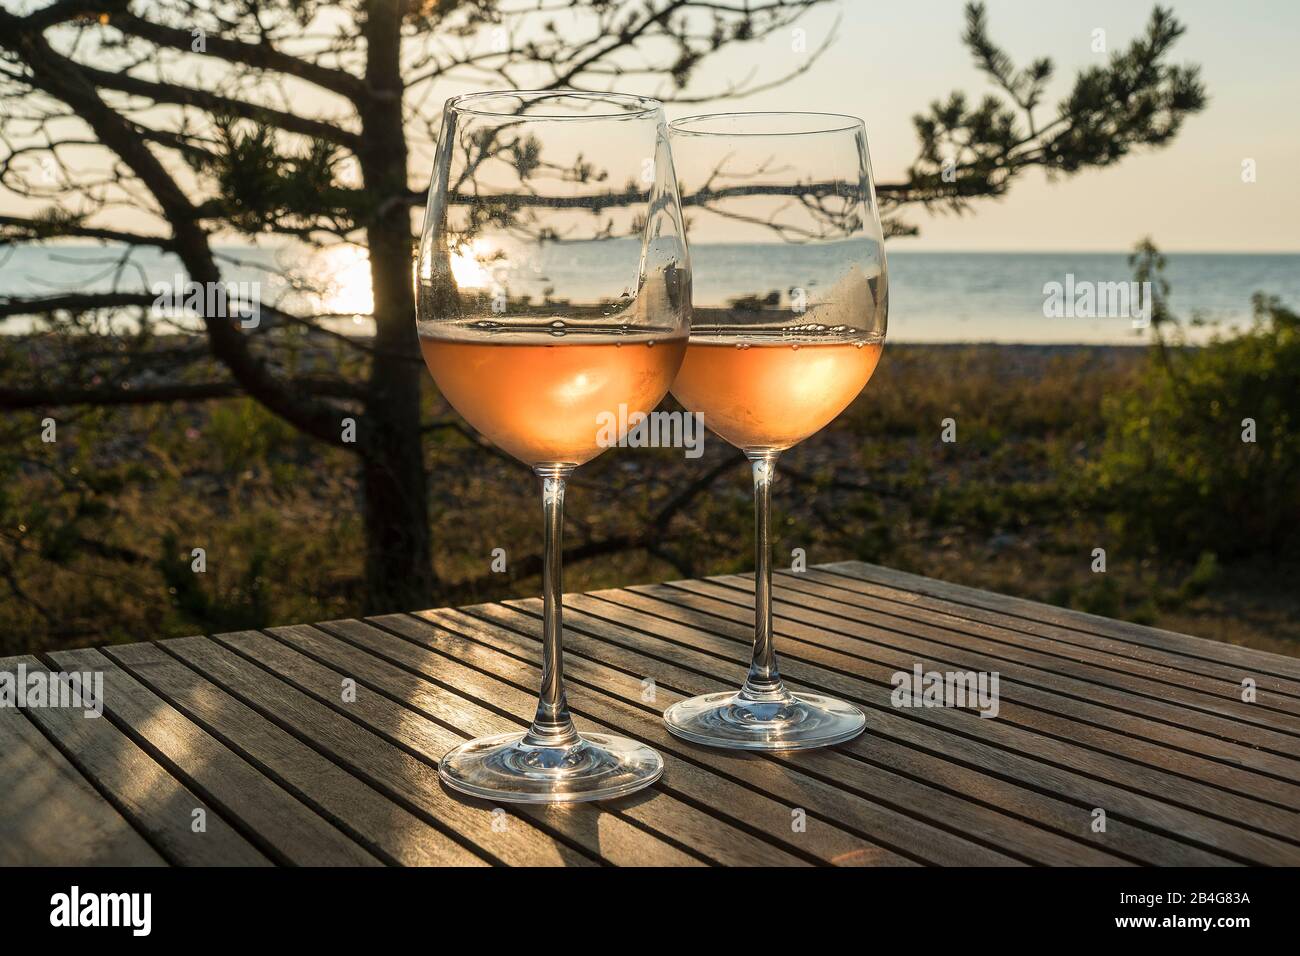 Estland, Ostseeinsel Hiiumaa, Küste, zwei Weingläser mit Roséwein im Abendlicht, Stilleben Banque D'Images